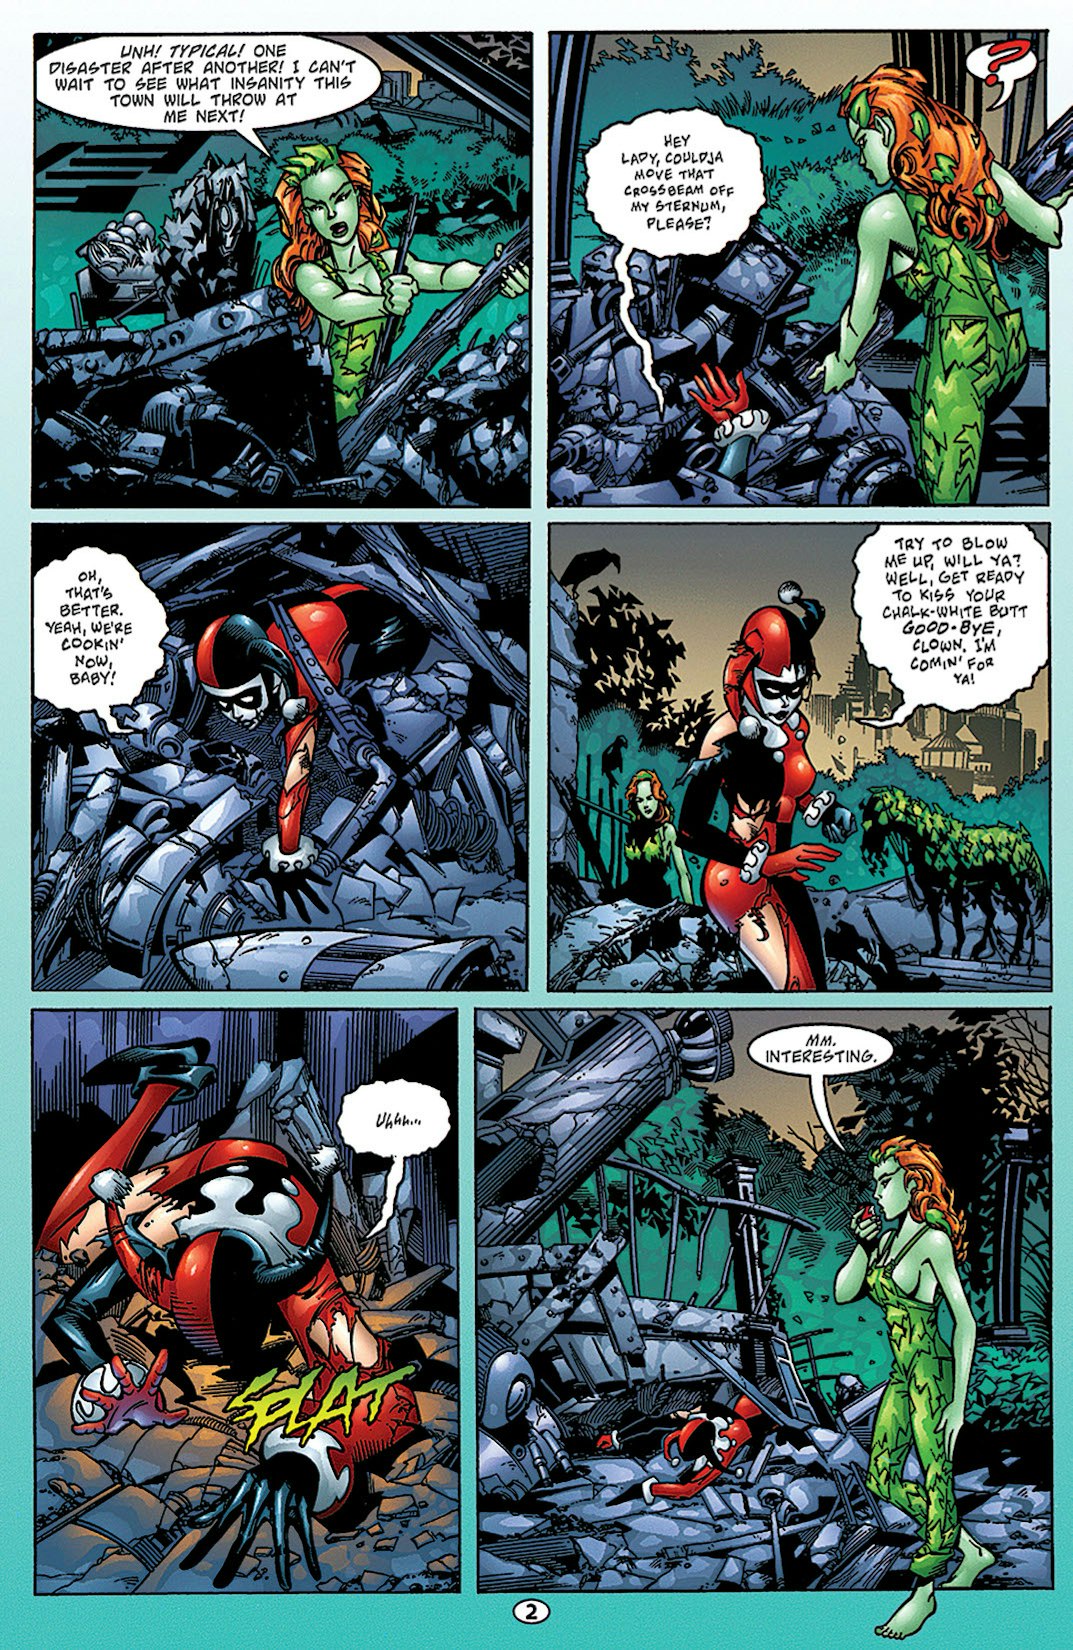 Batman: Harley Quinn #1